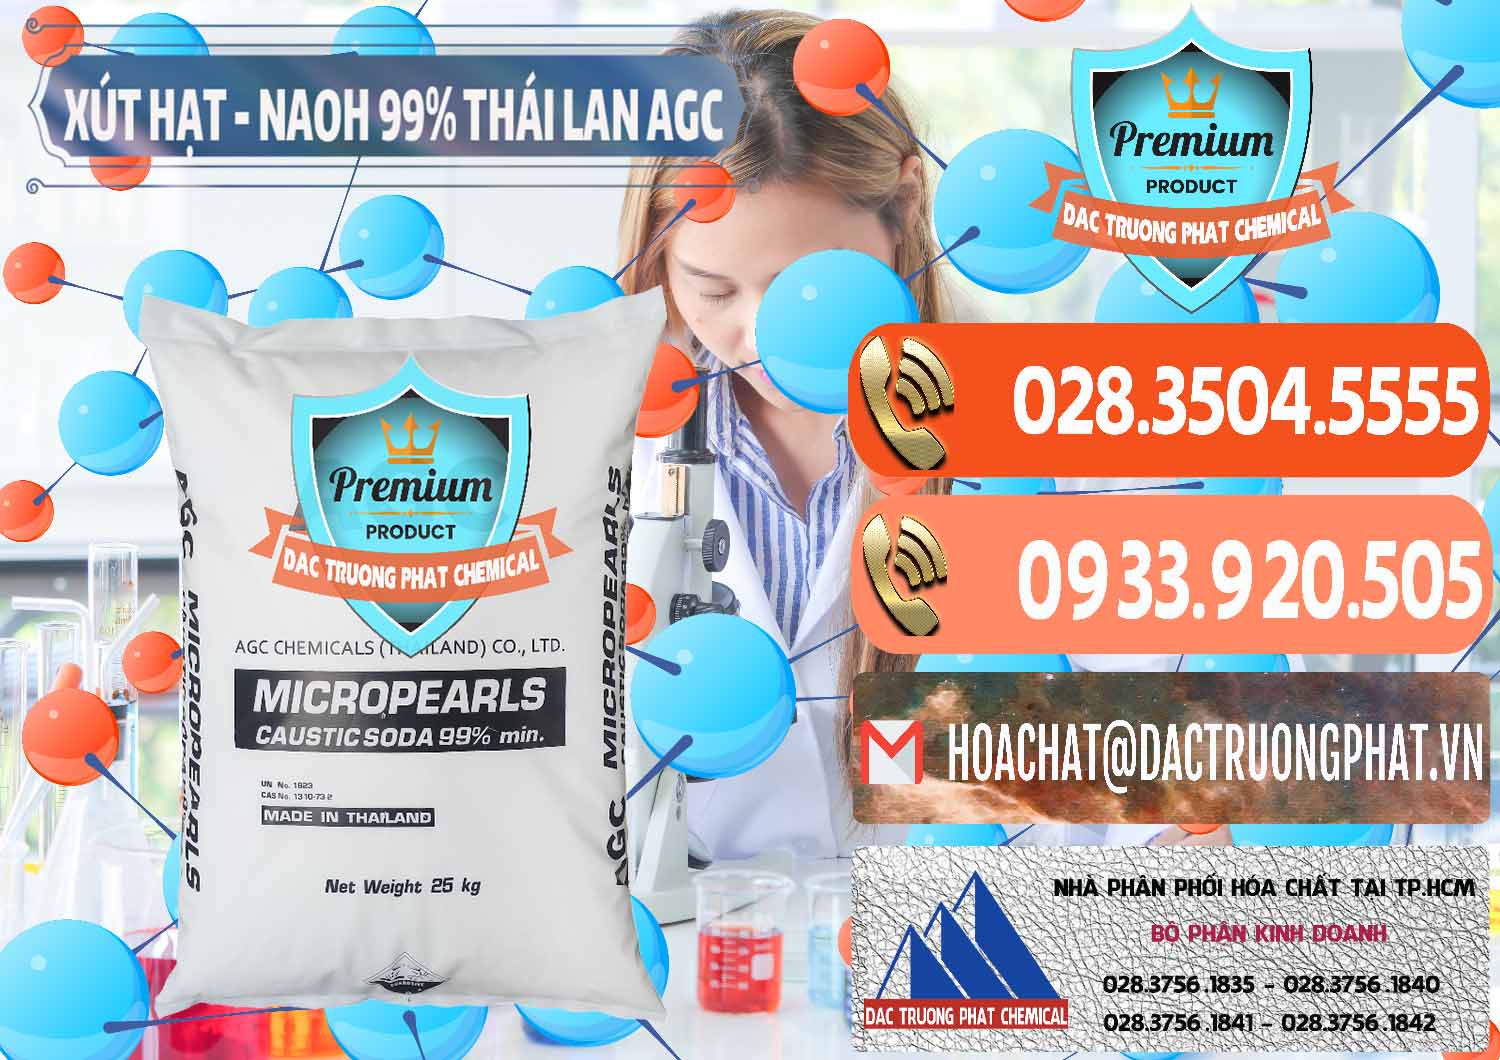 Đơn vị chuyên kinh doanh và bán Xút Hạt - NaOH Bột 99% AGC Thái Lan - 0168 - Cty chuyên cung cấp - kinh doanh hóa chất tại TP.HCM - hoachatmientay.com